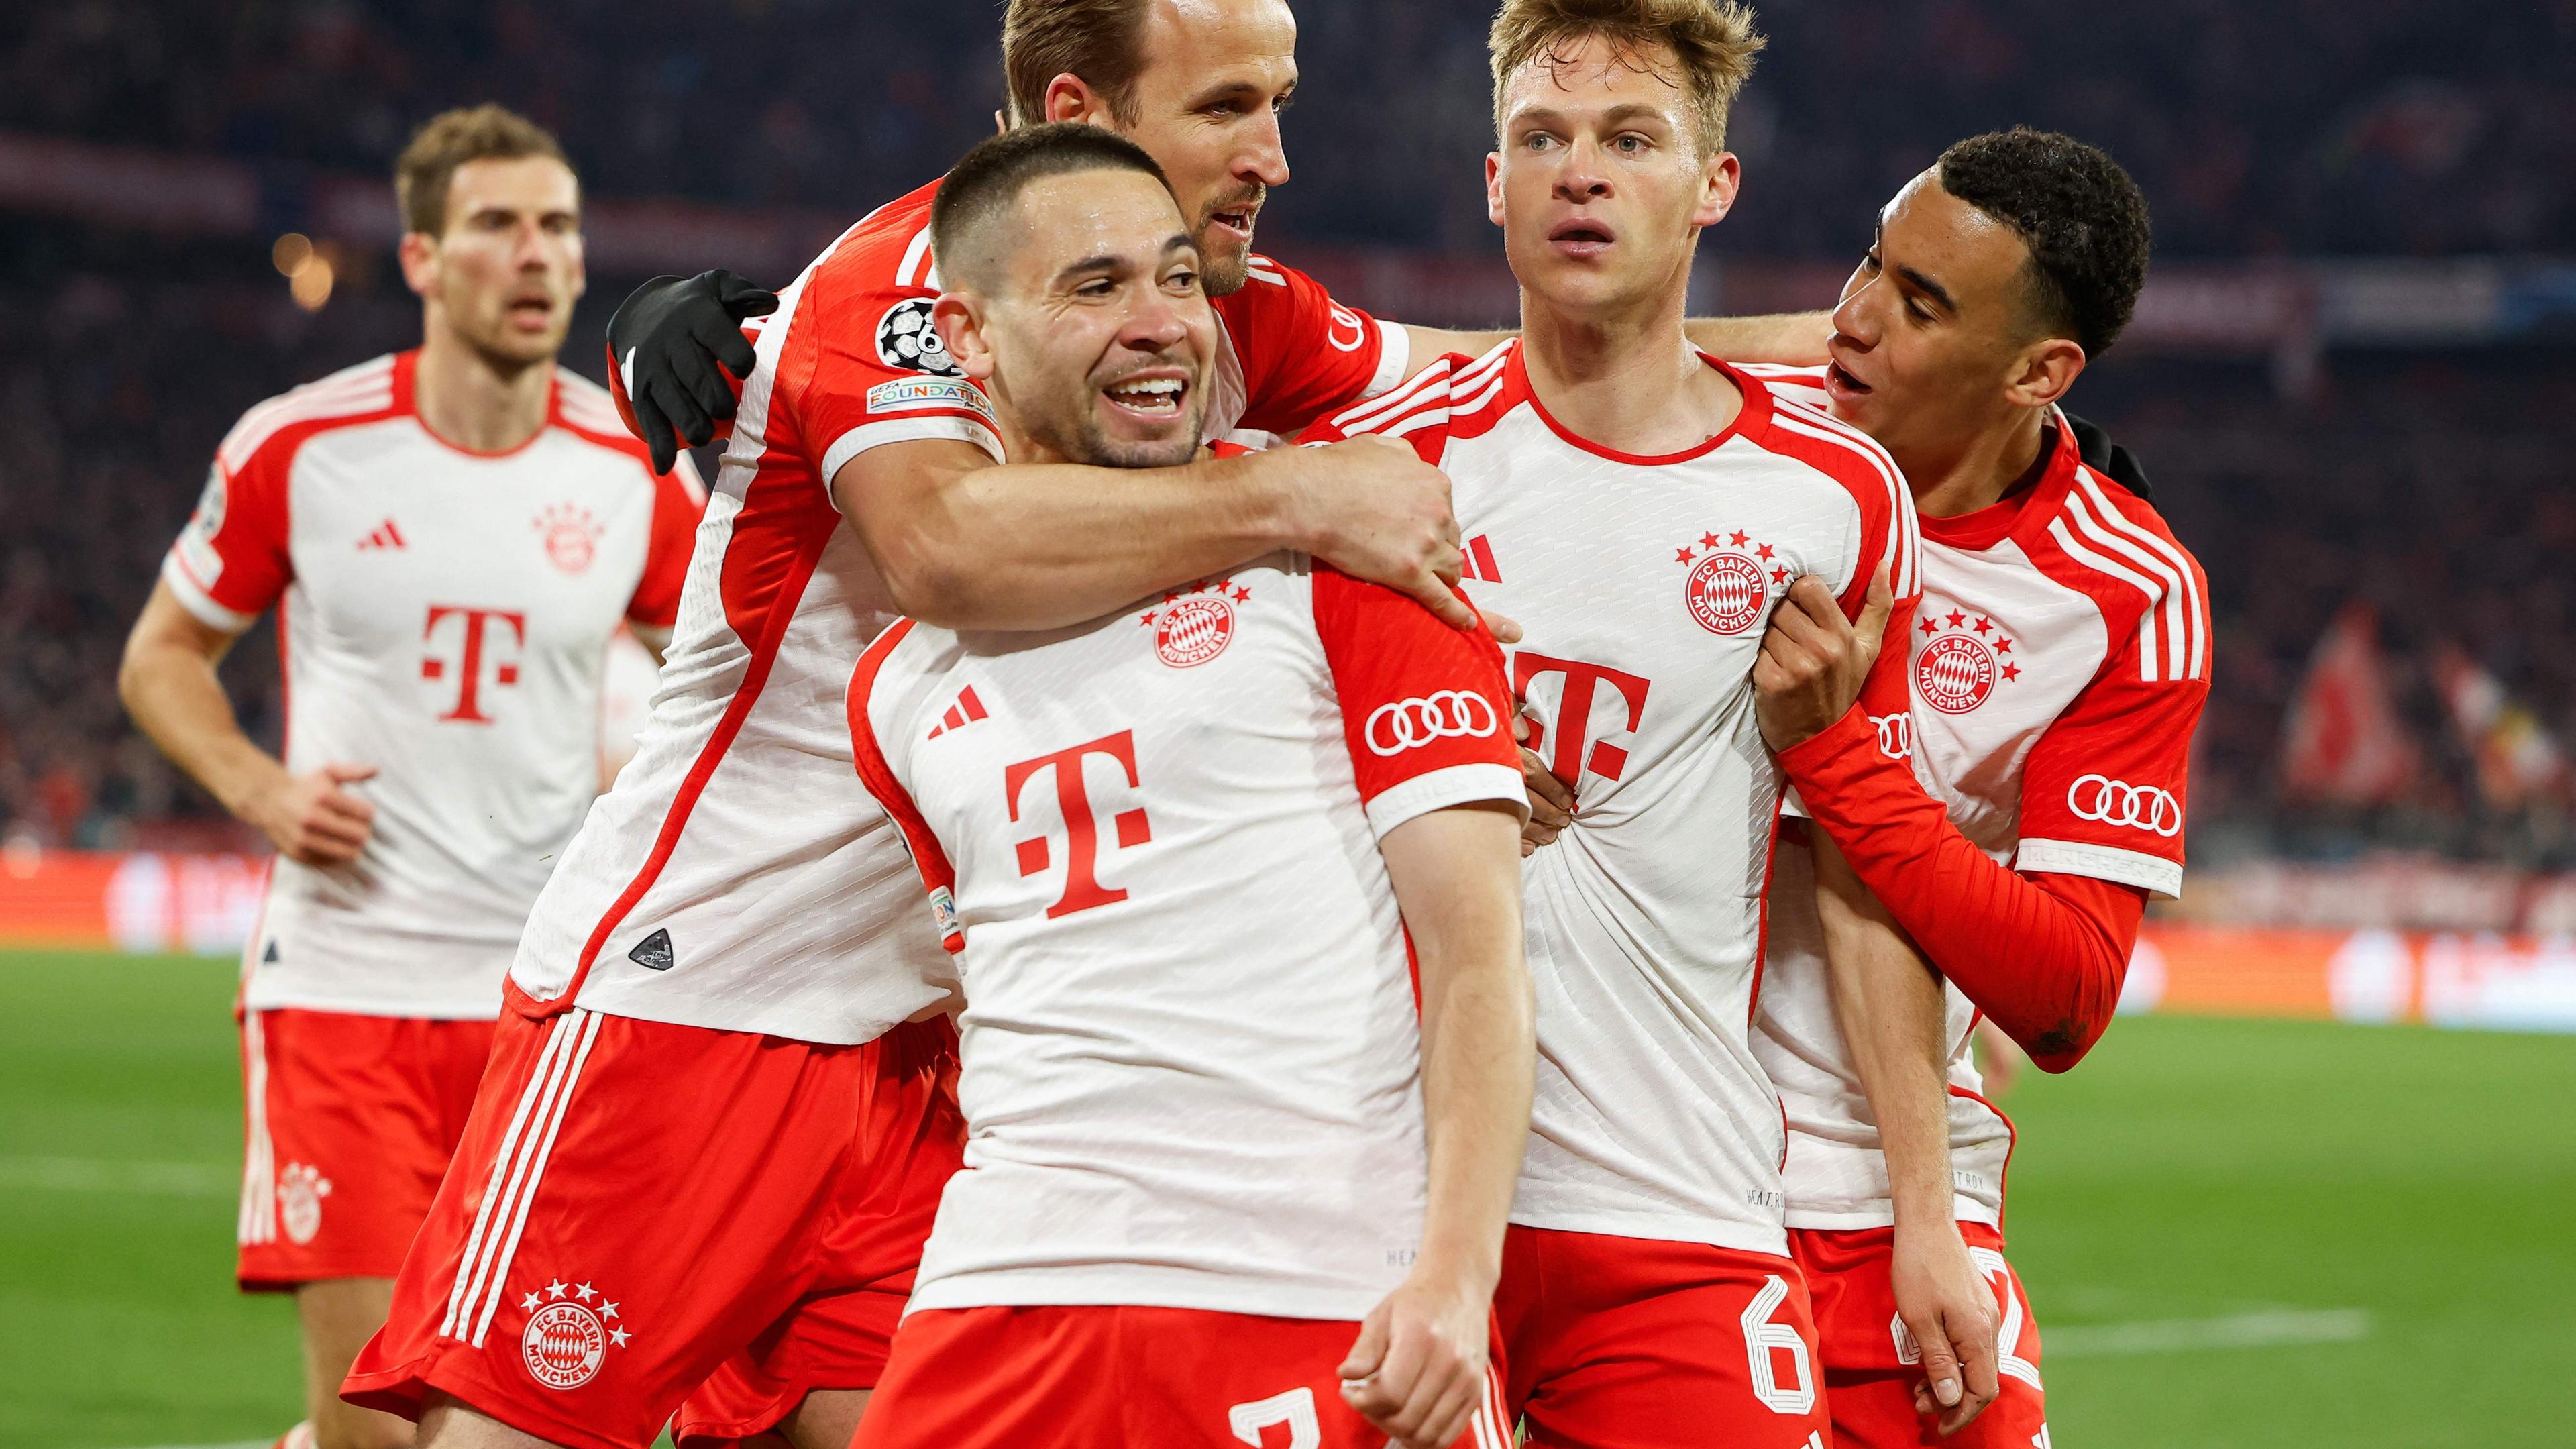 Die Spieler vom FC Bayern München jubeln über ihren Sieg.